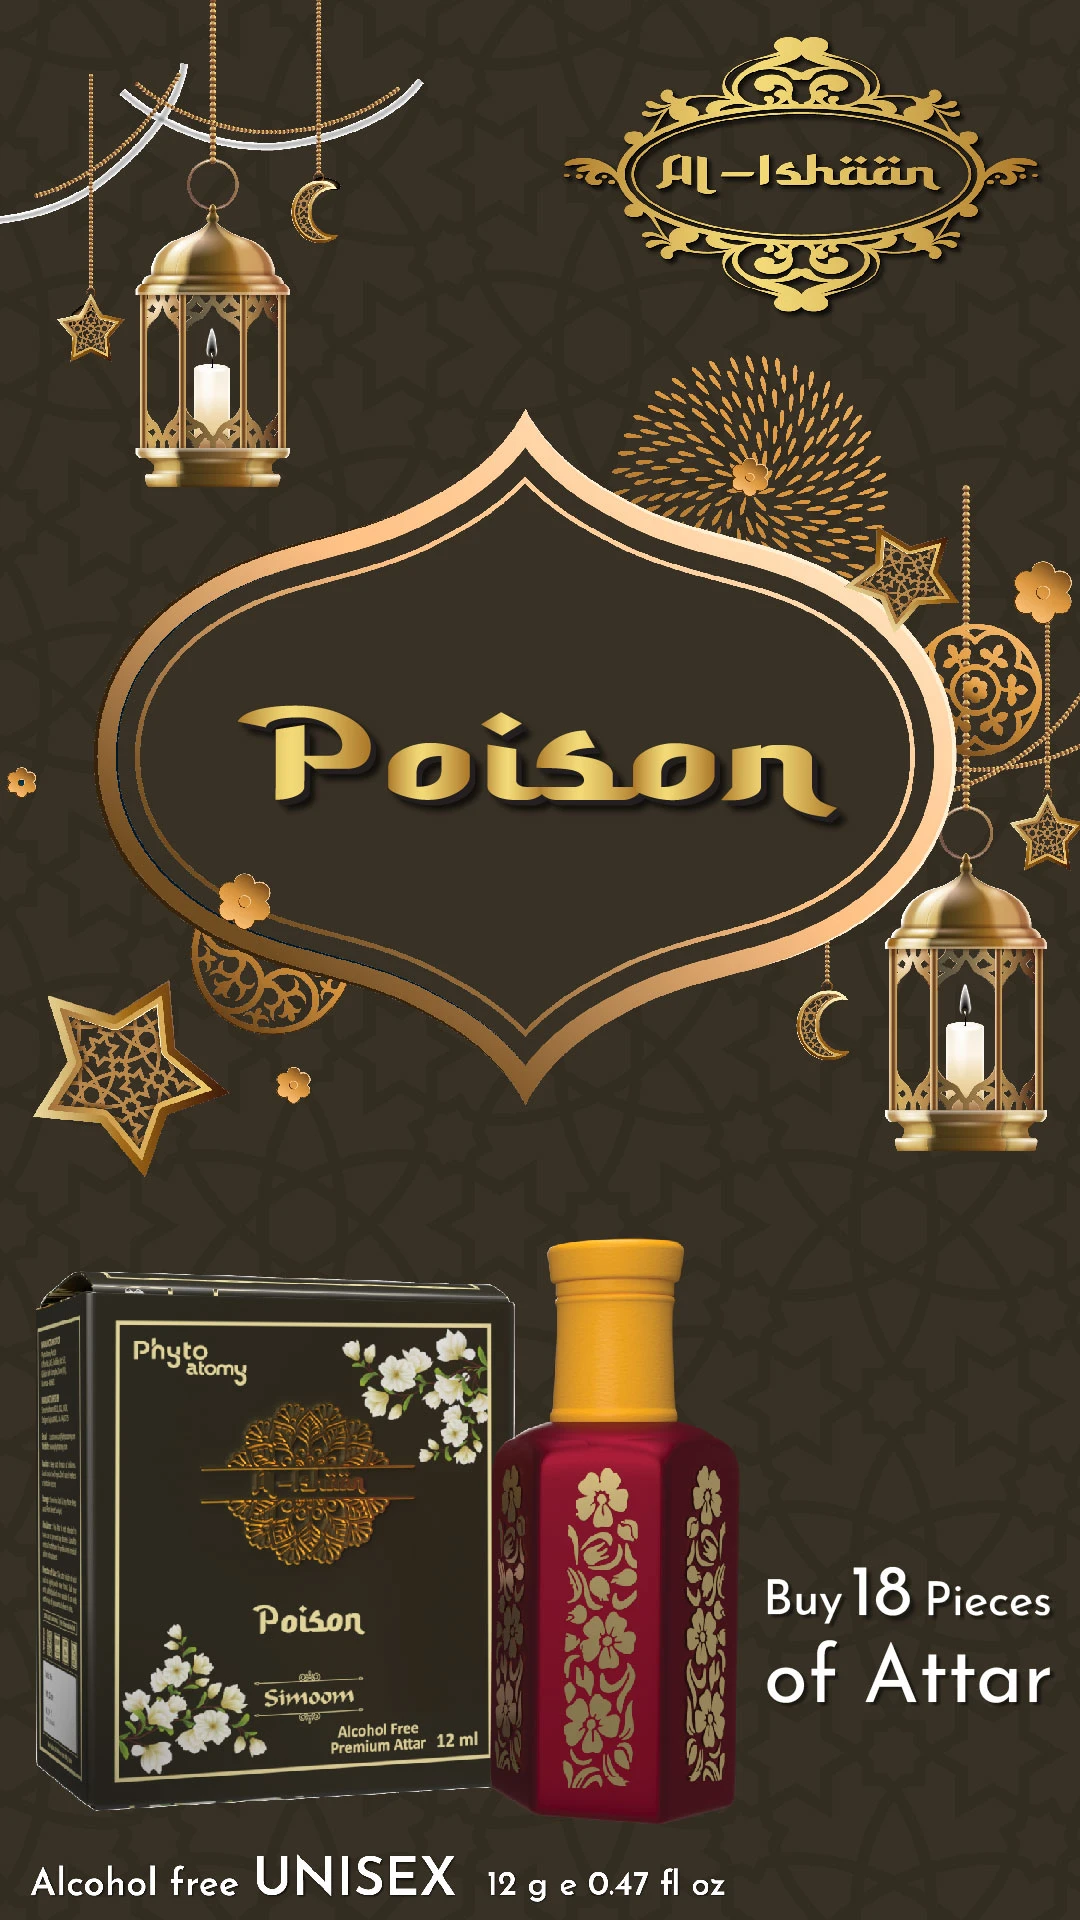 RBV B2B Al Ishan Poison Attar (12ml)-18 Pcs.